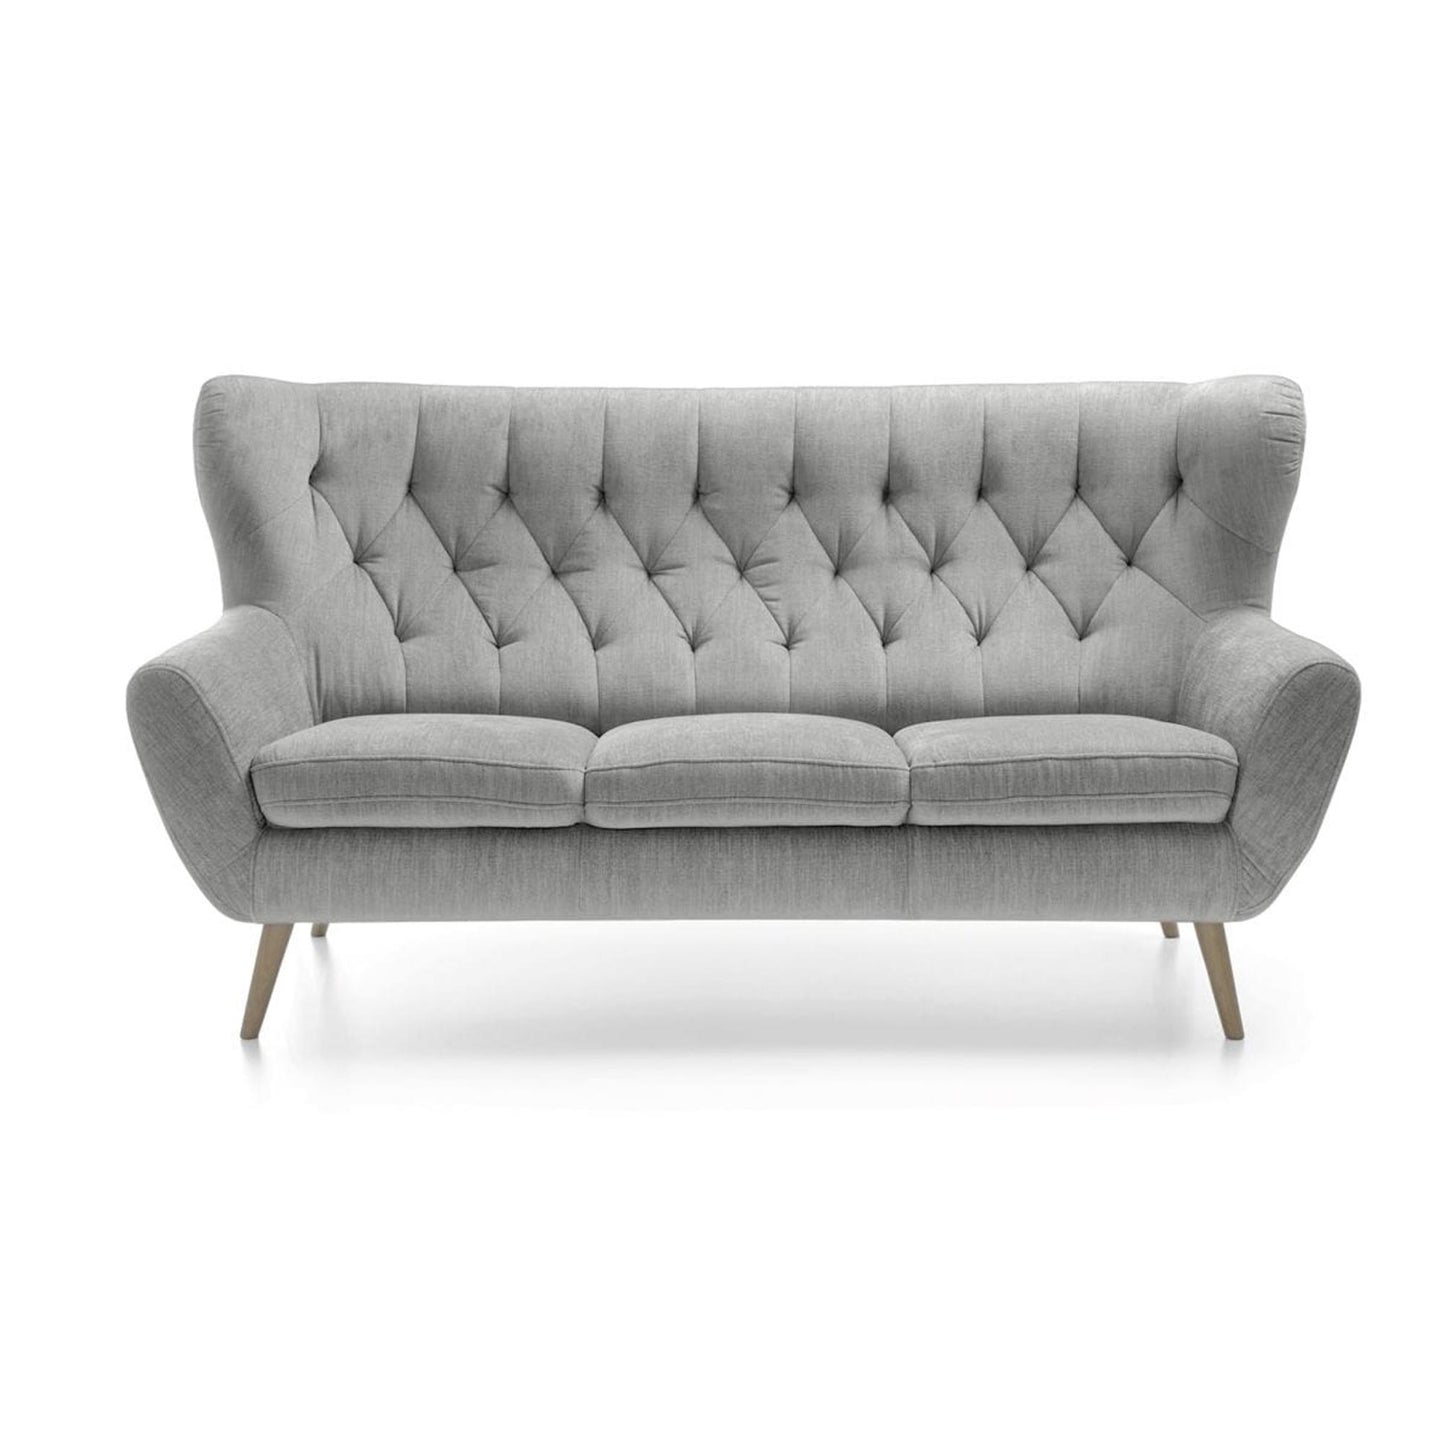 Voss Sofa in Light Gray